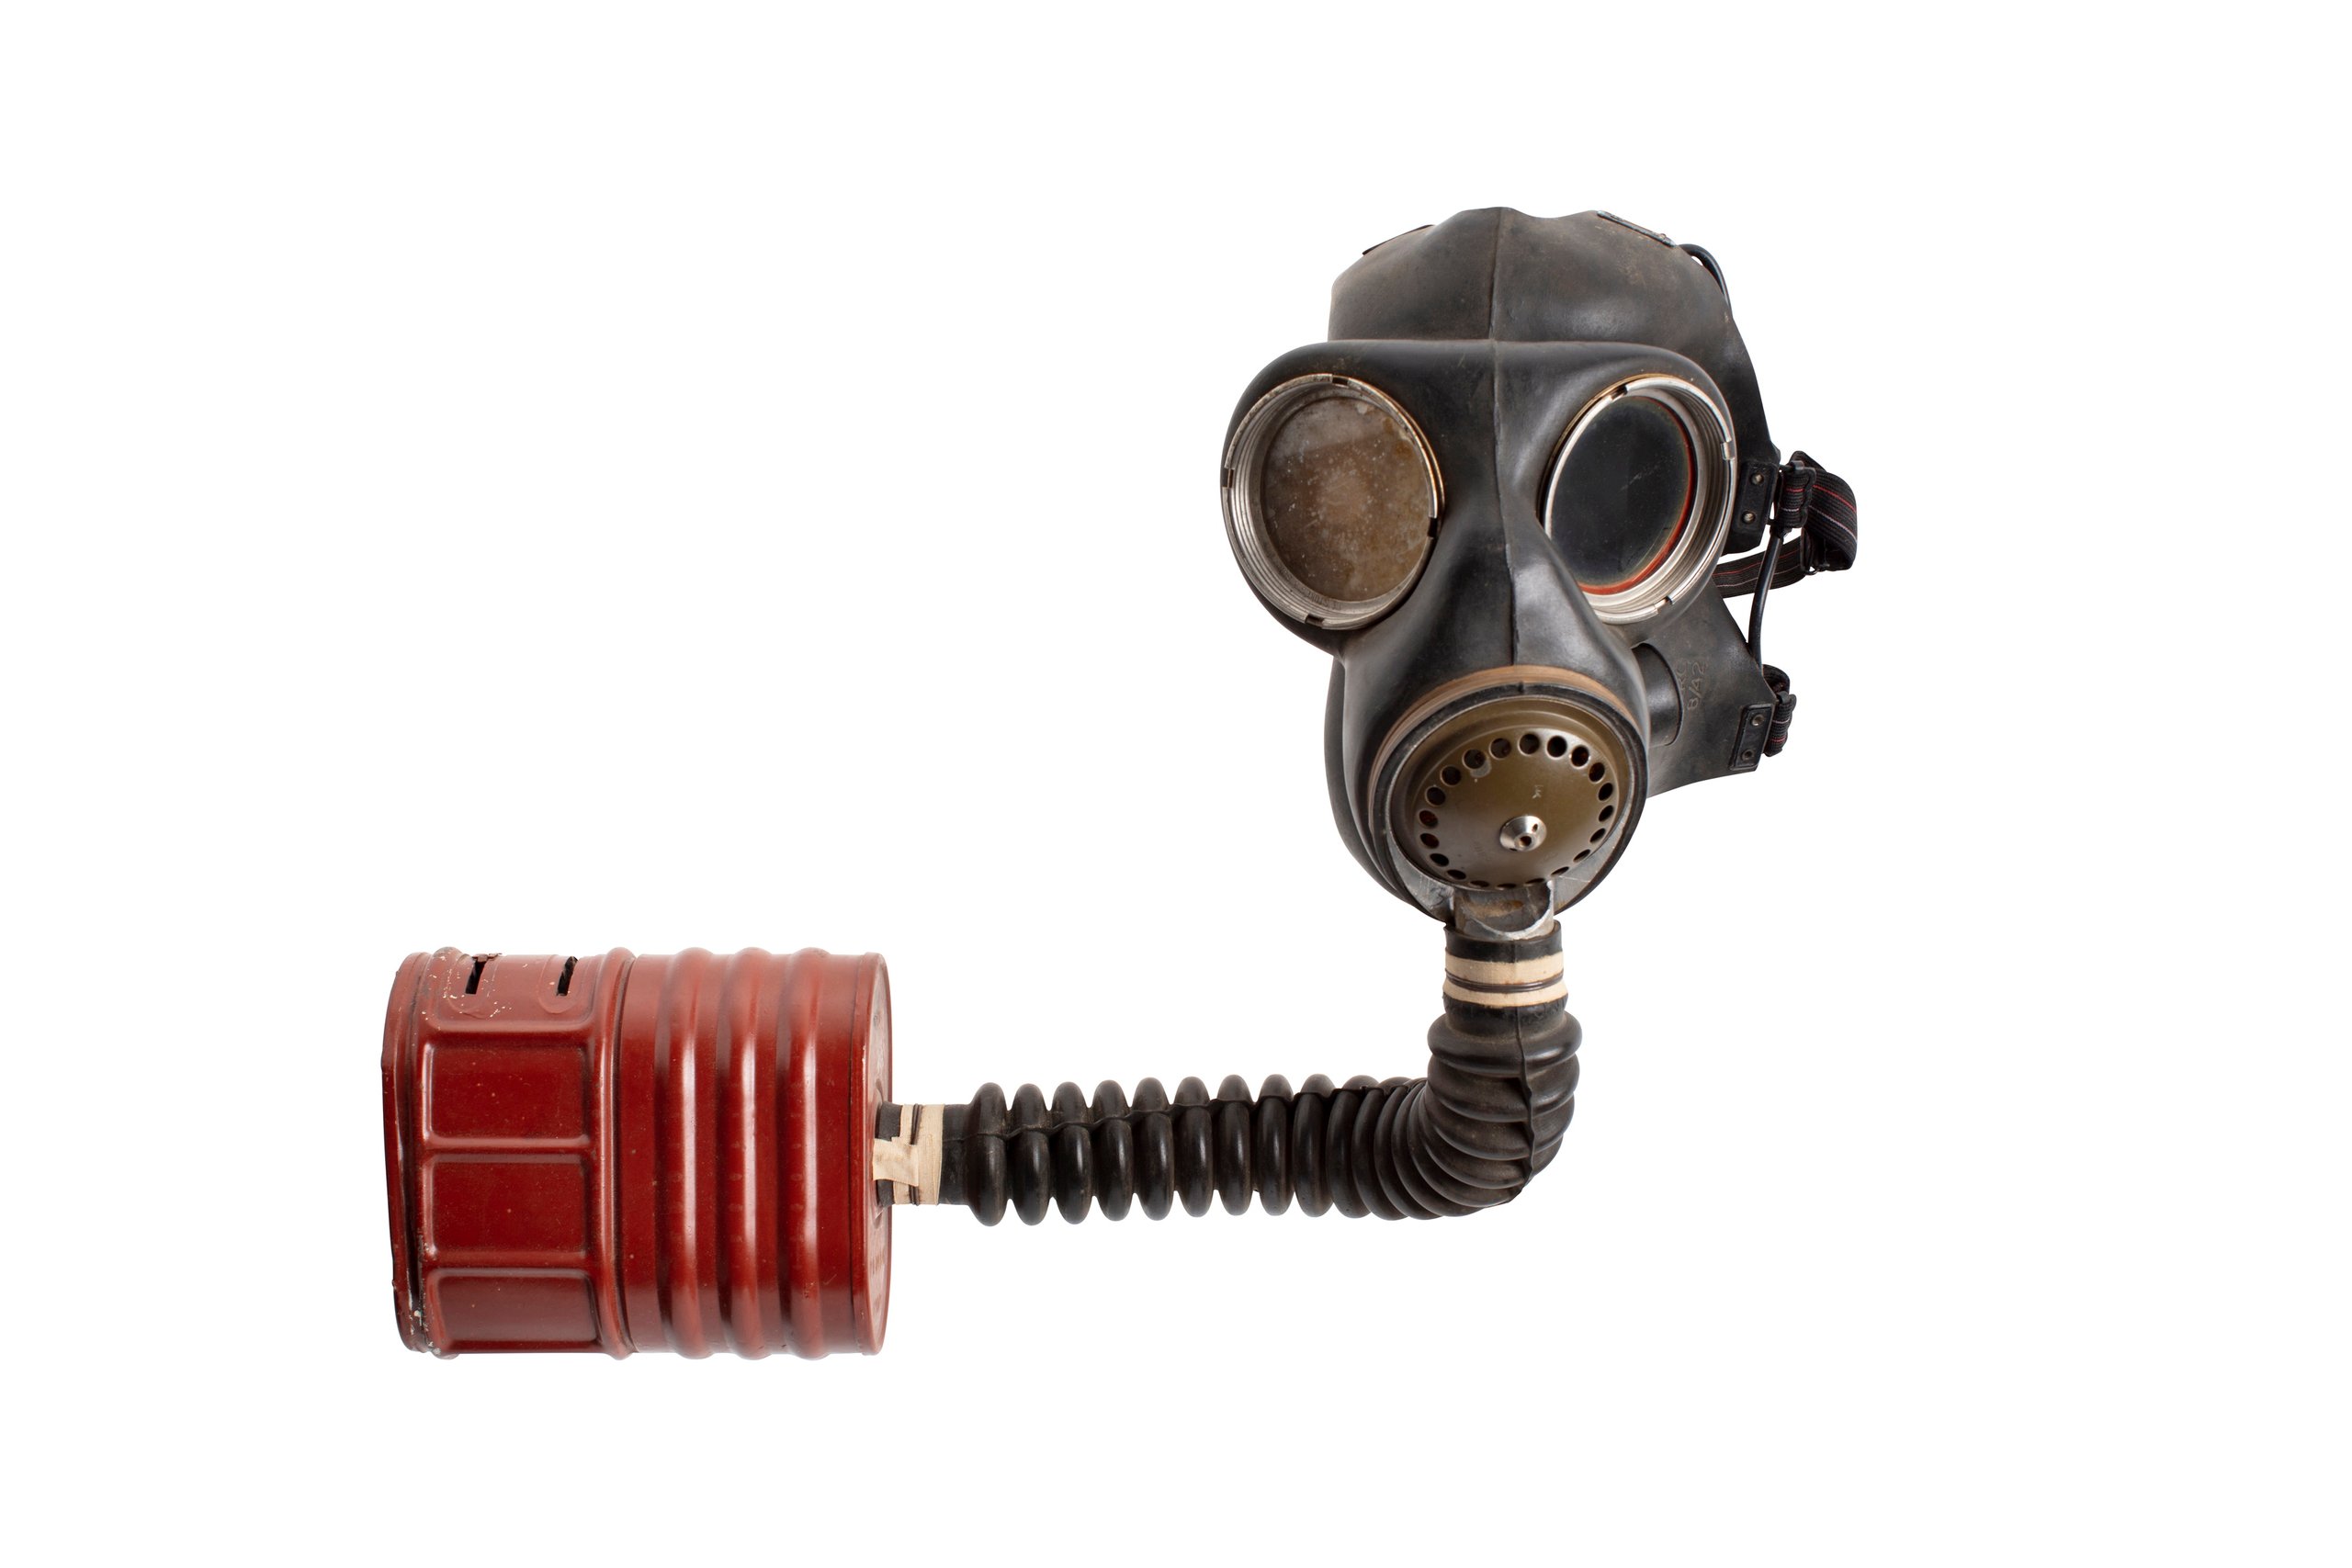 Anti-gas respirator set